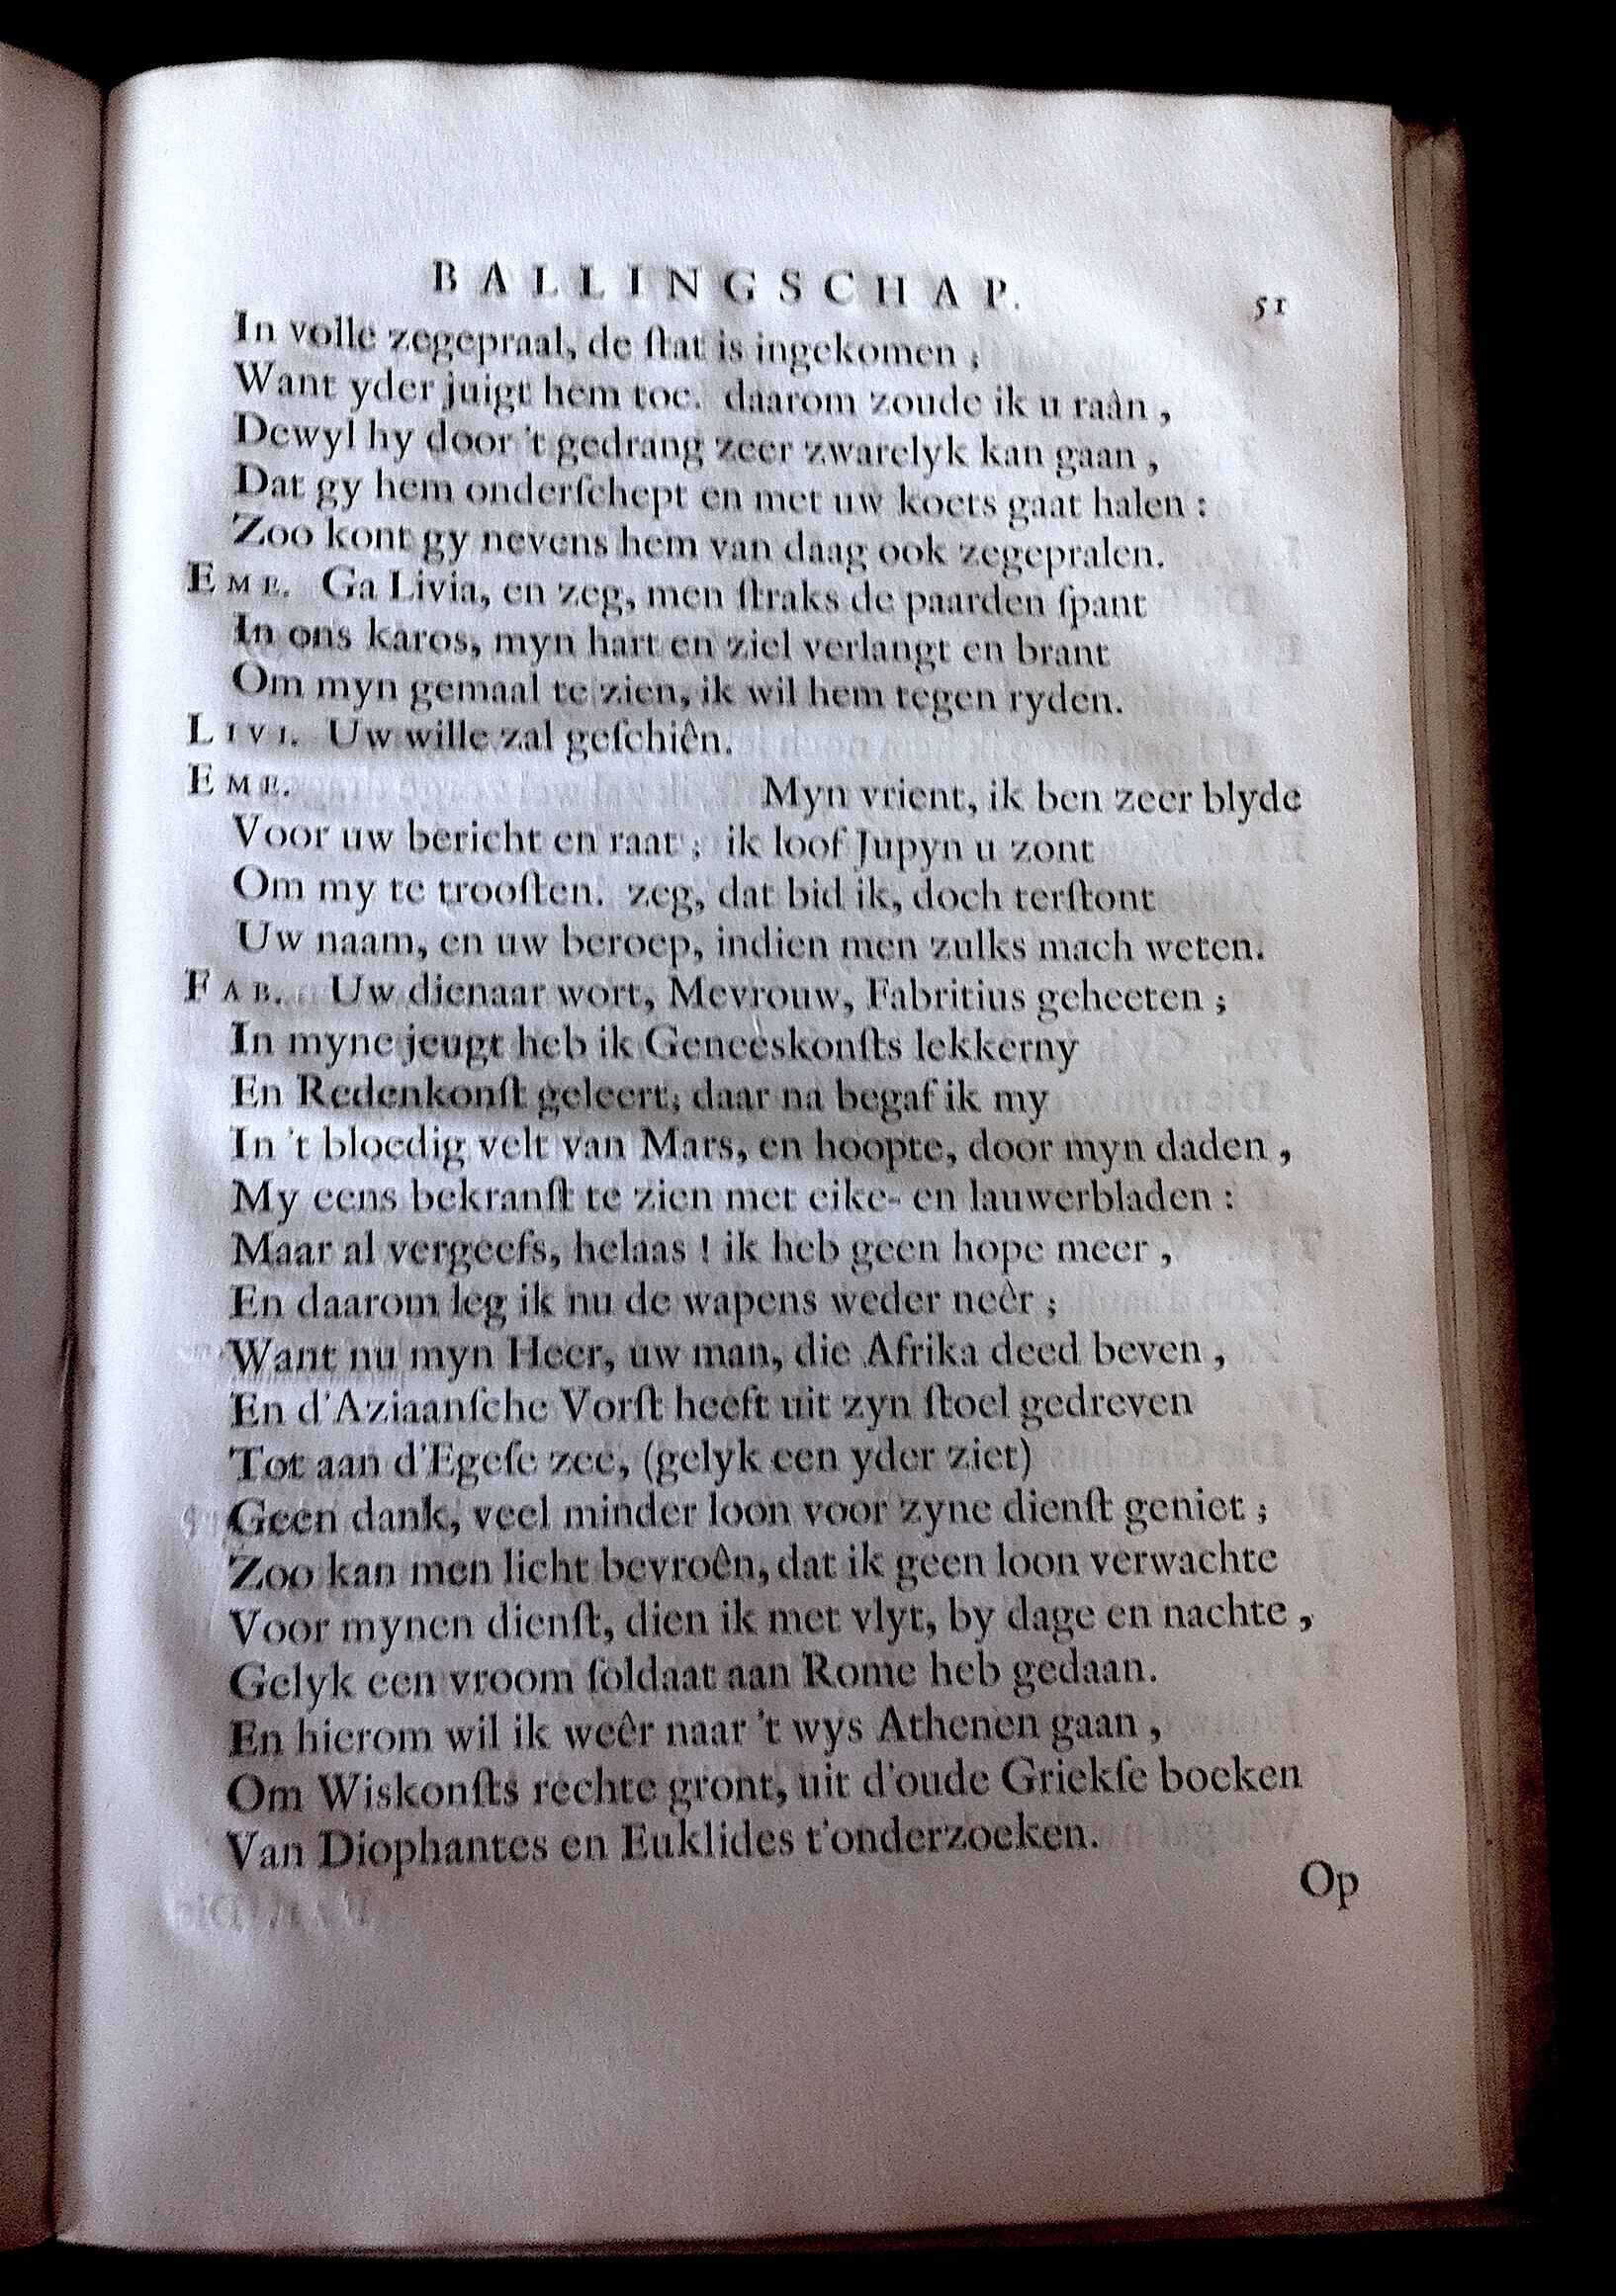 BoccardScipioFolio1658p51